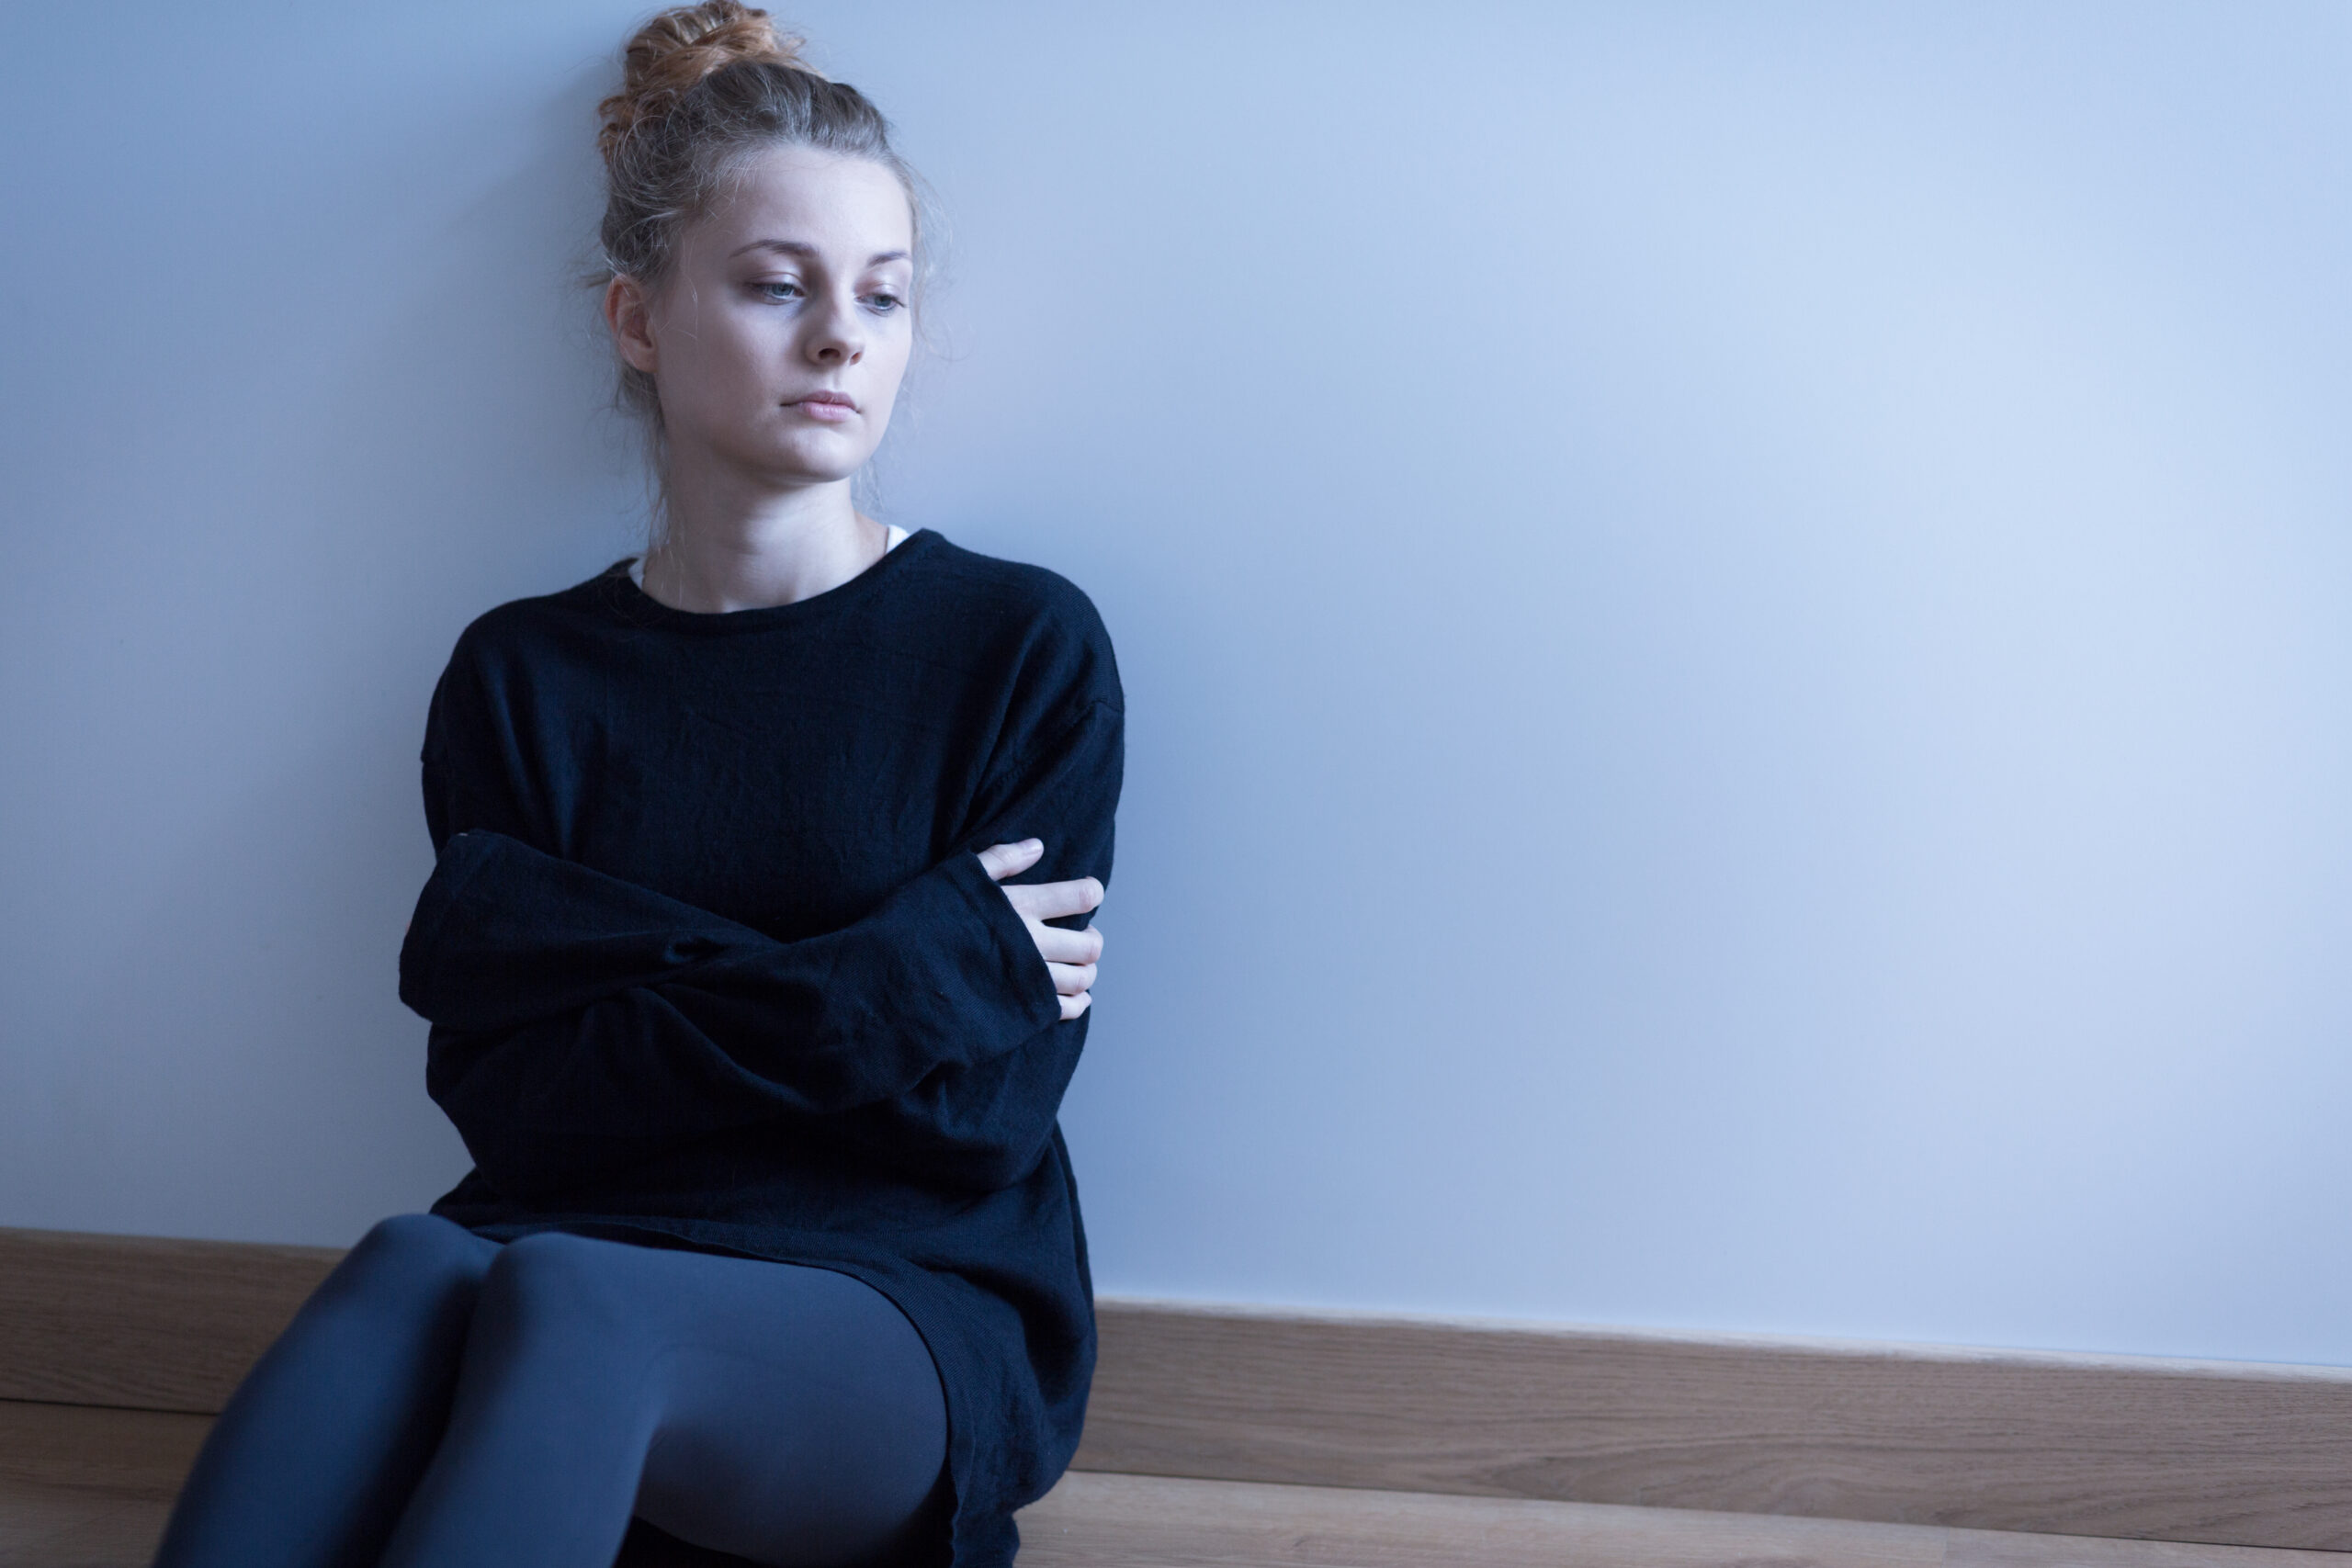 15 Signs of Self-Harm in Teens